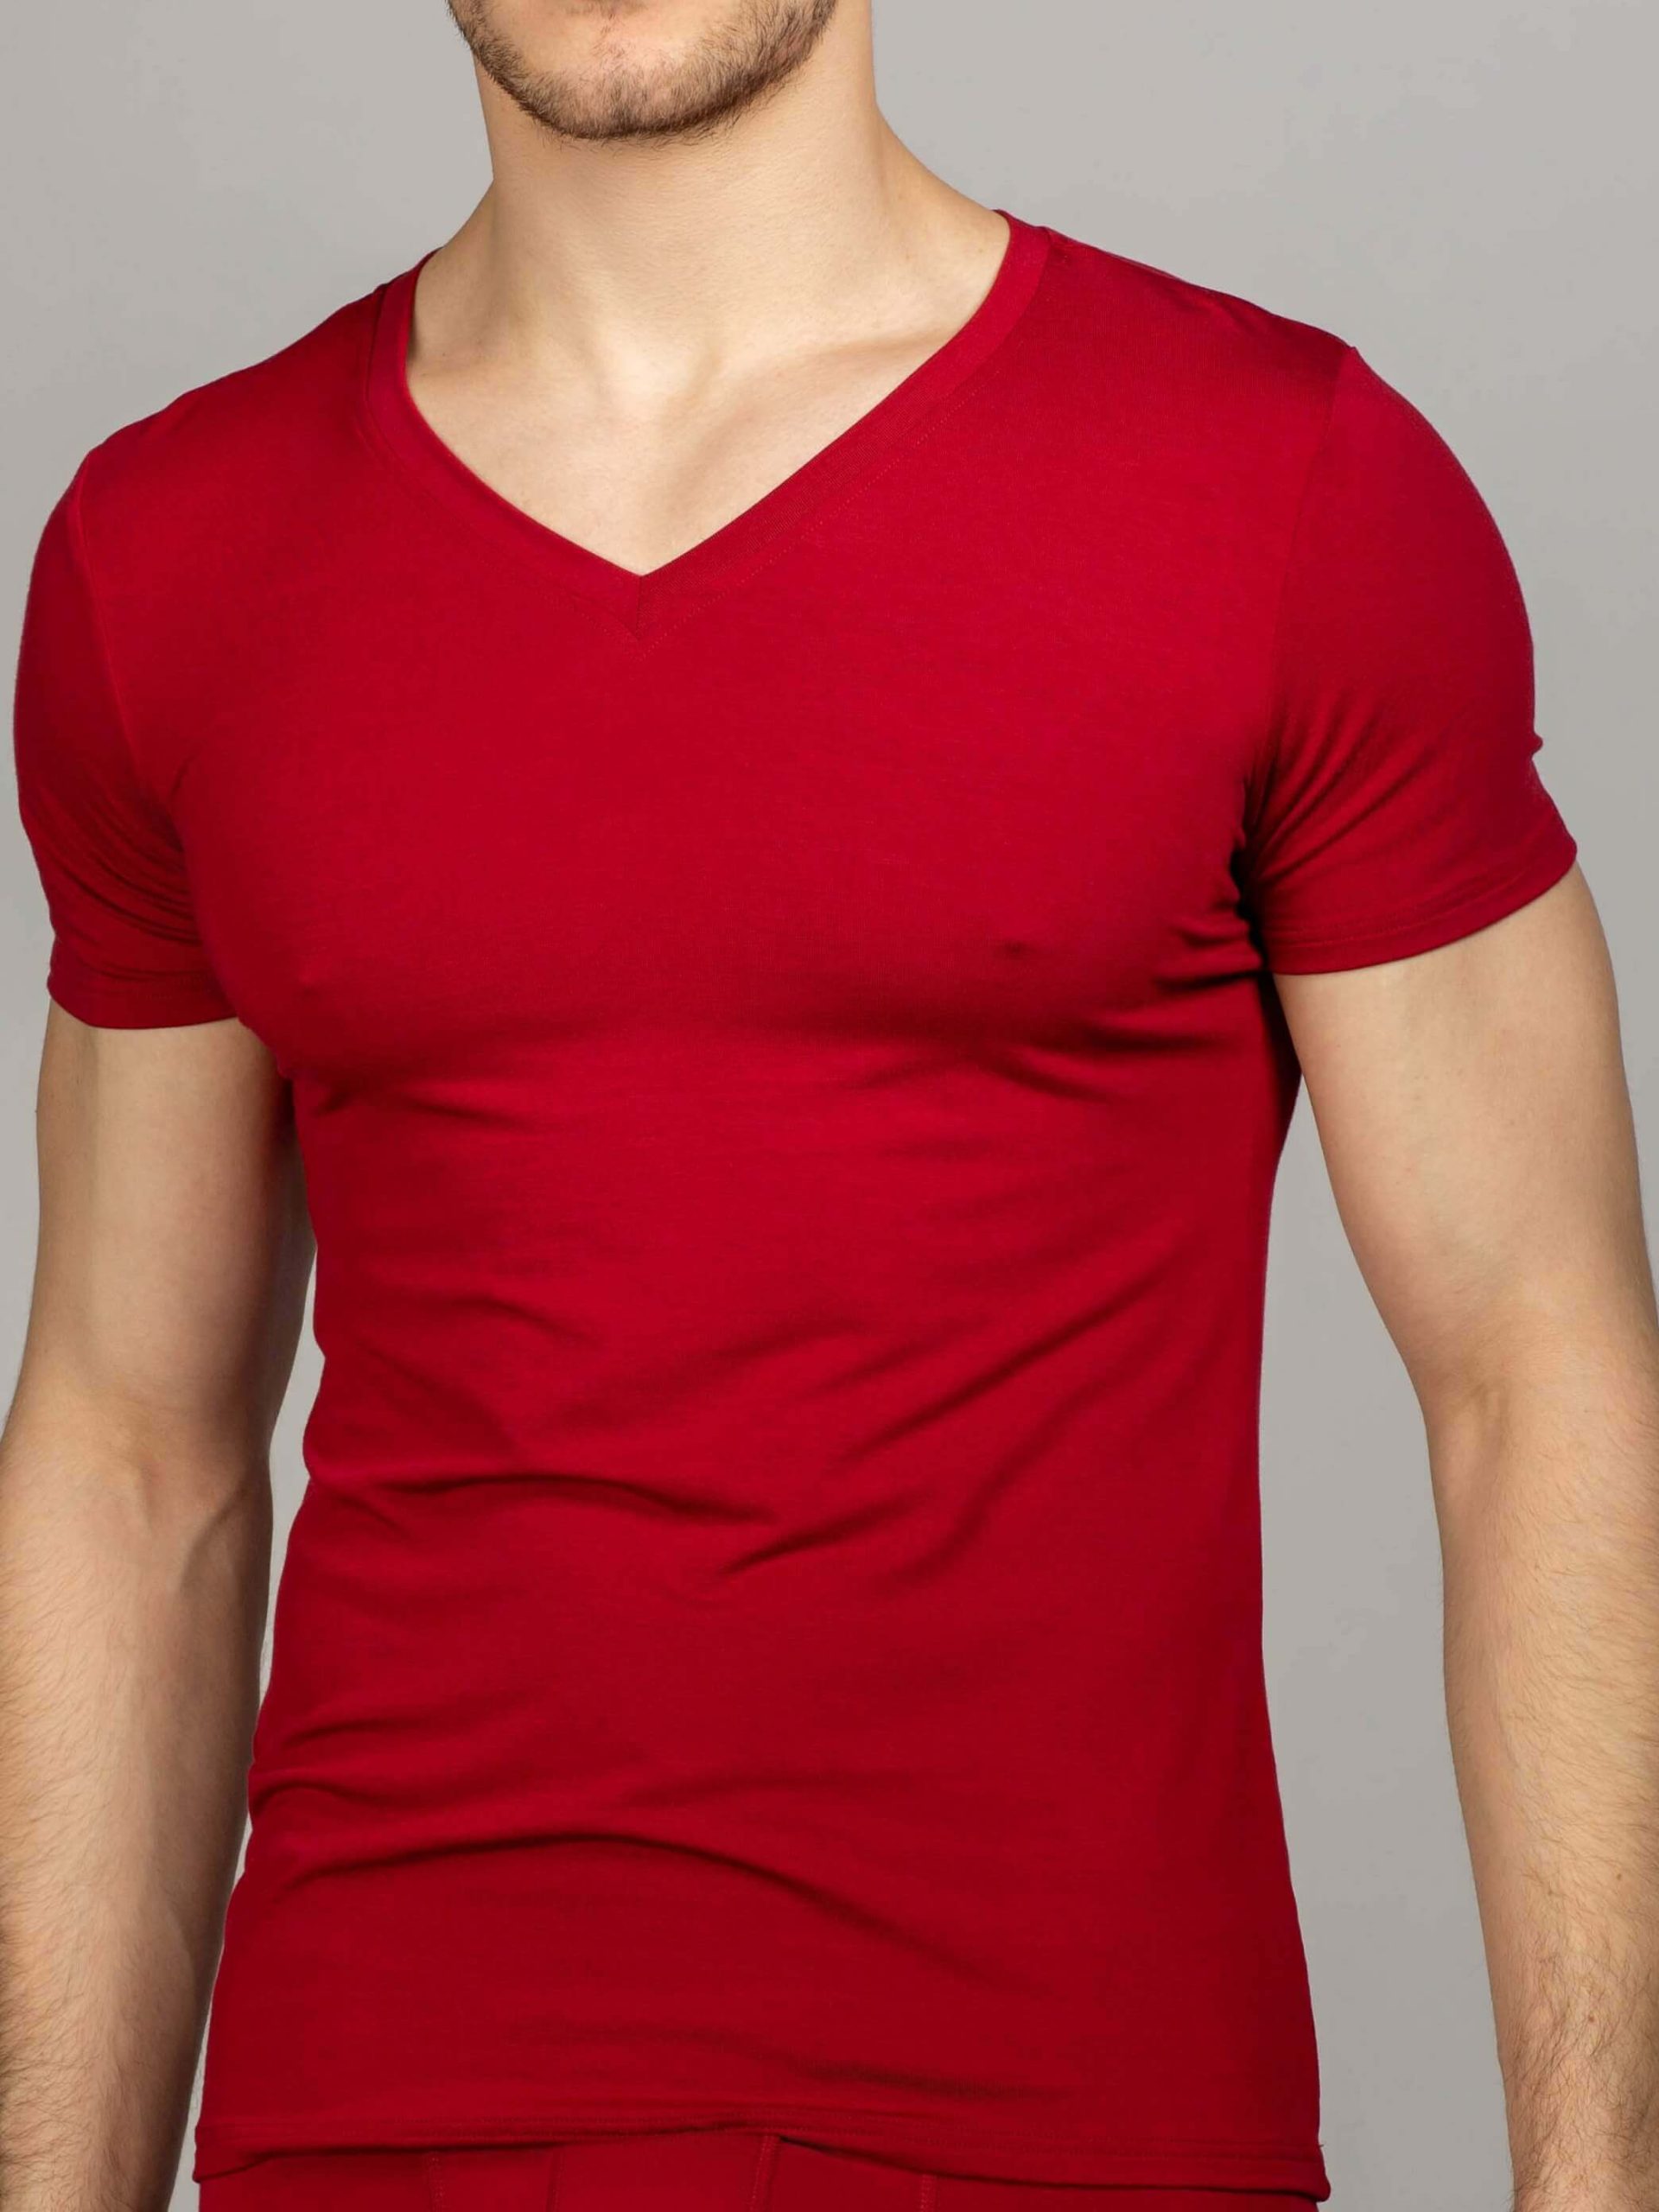 Купить мужскую футболку v вырезом. Футболка мужская. Бордовая футболка мужская. Футболка с треугольным вырезом мужская. Темно красная футболка.